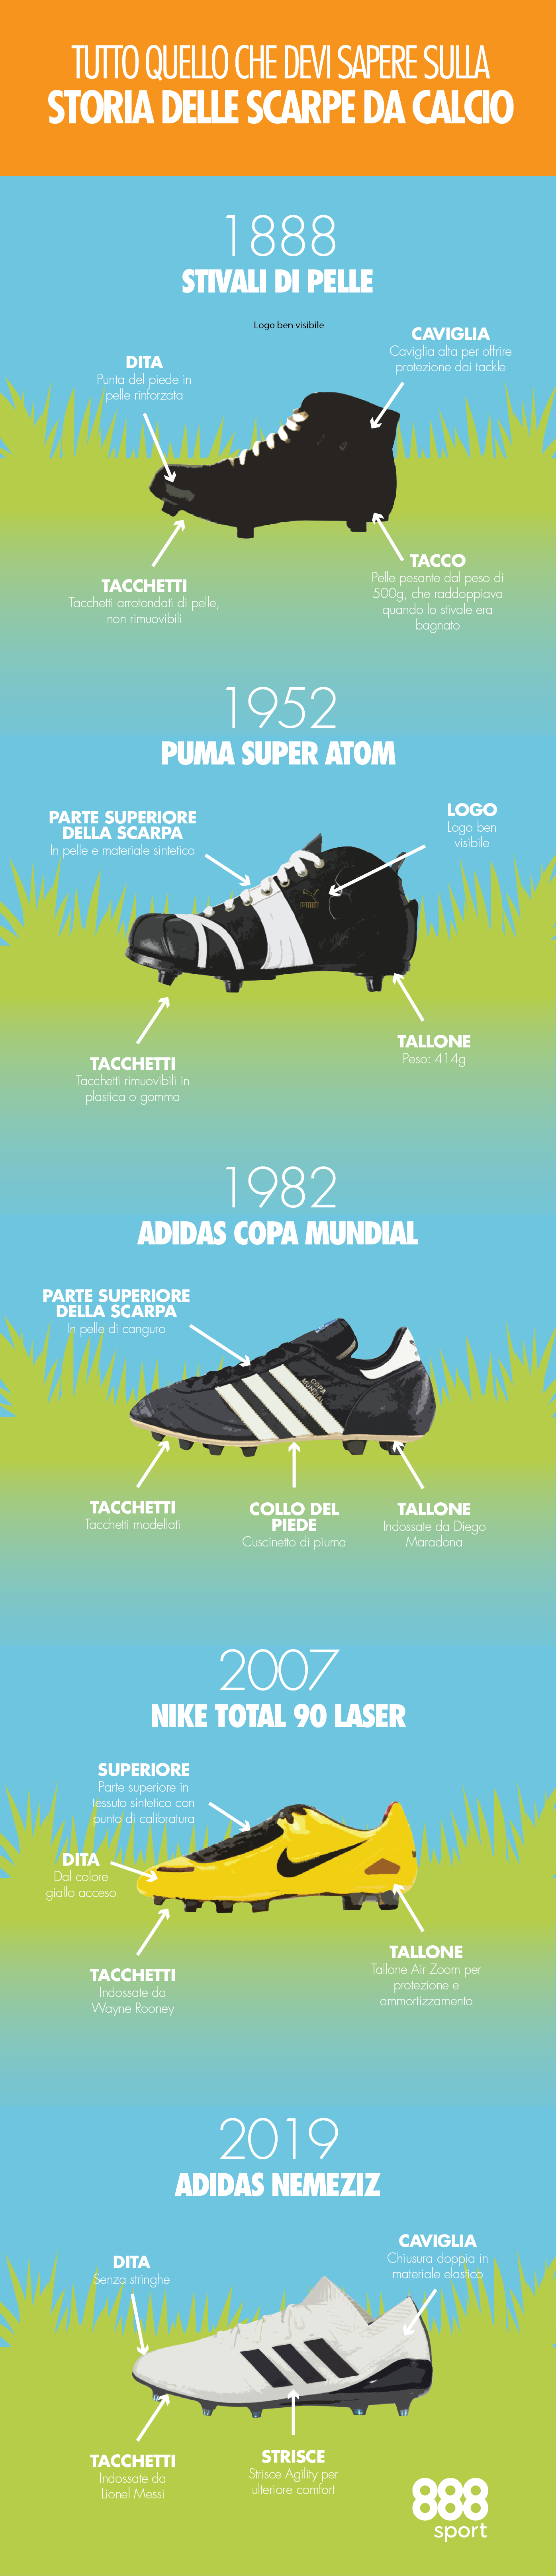 Una guida storica agli scarpini da calcio!